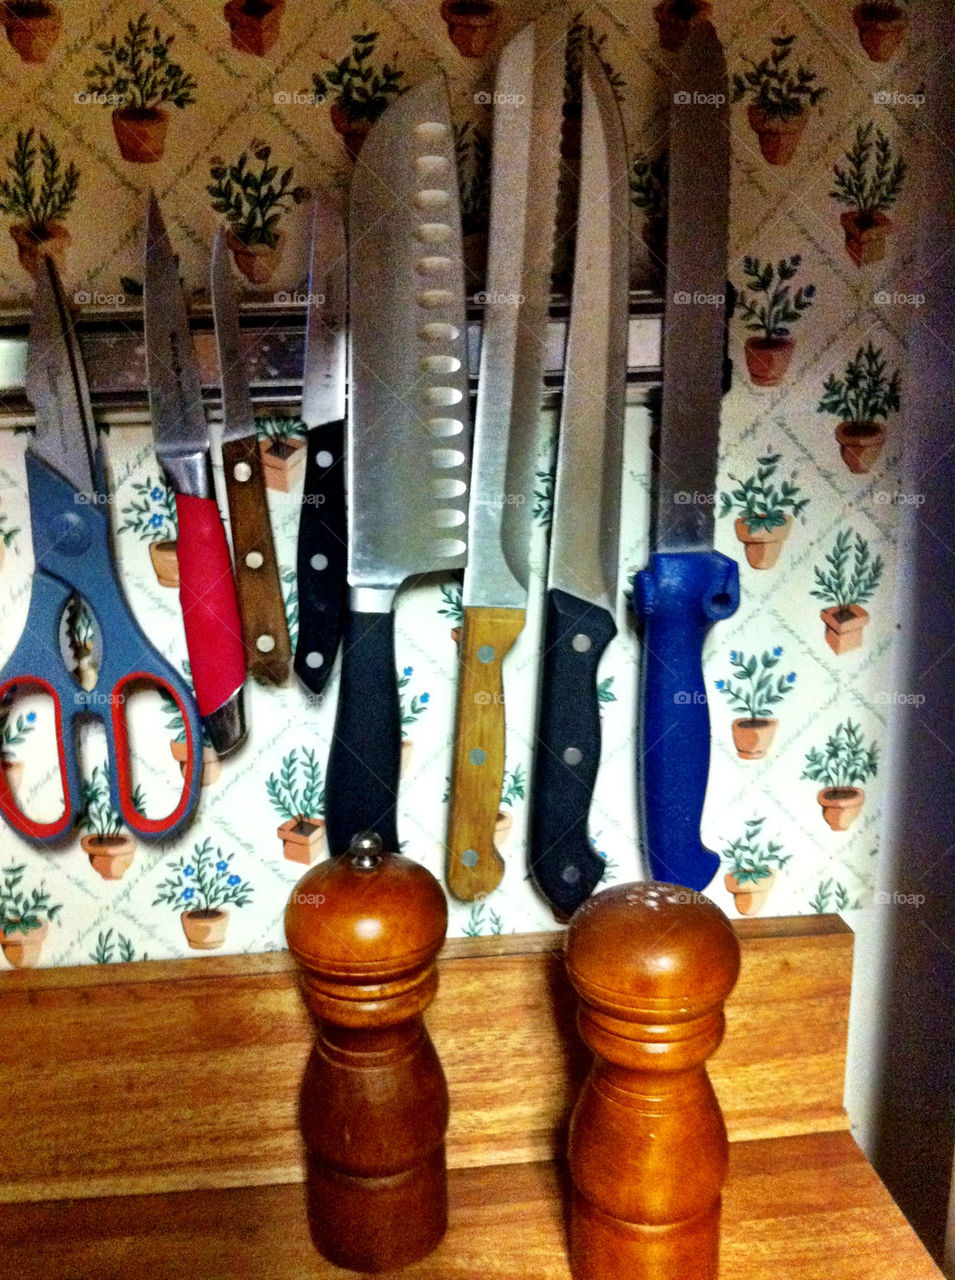 kitchen knives scissors kitchen utensils by serenitykennedy